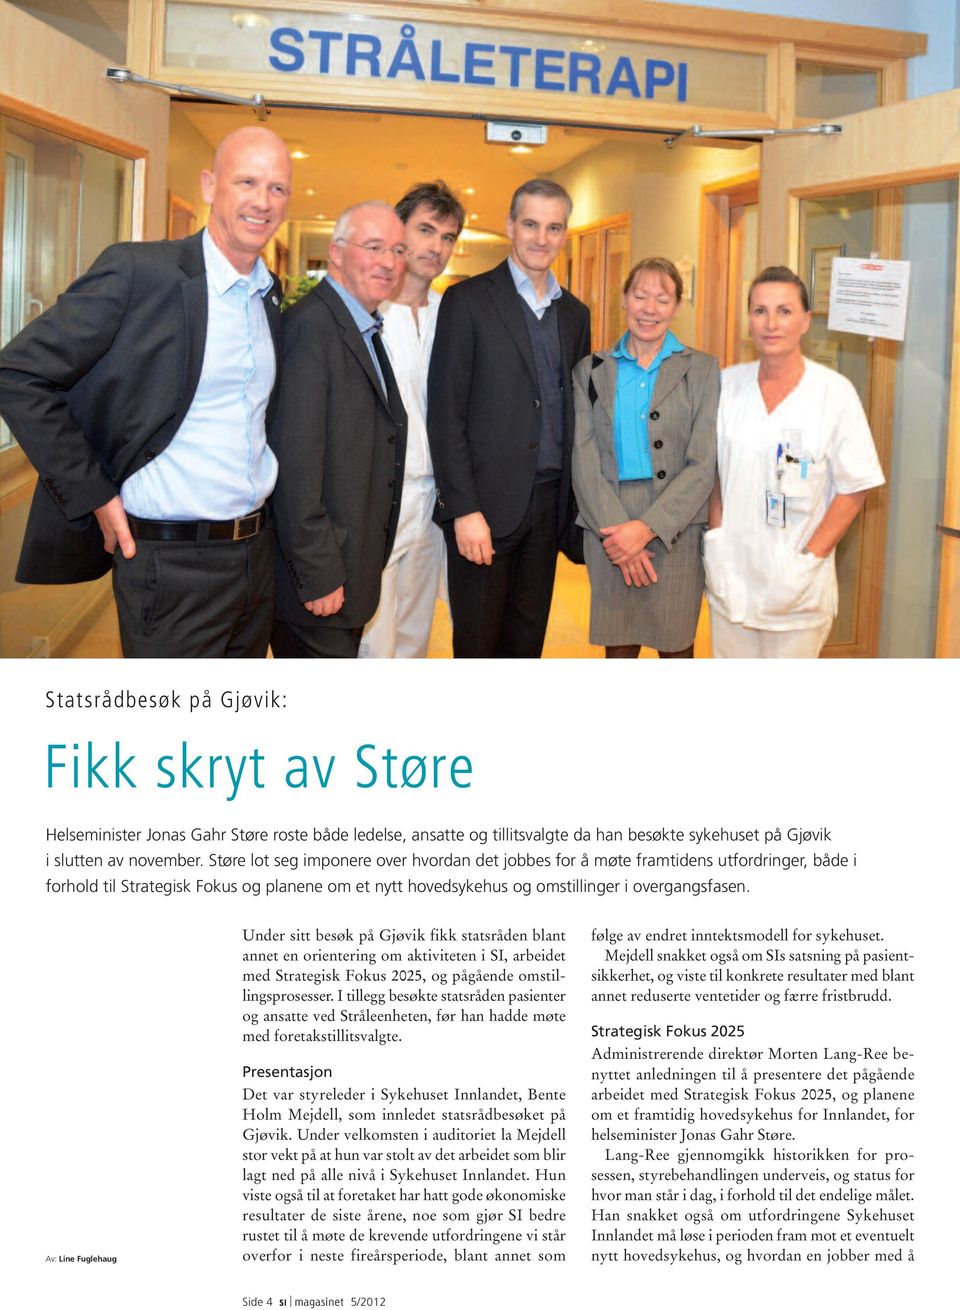 Av: Line Fuglehaug Under sitt besøk på Gjøvik fikk statsråden blant annet en orientering om aktiviteten i SI, arbeidet med Strategisk Fokus 2025, og pågående omstillingsprosesser.